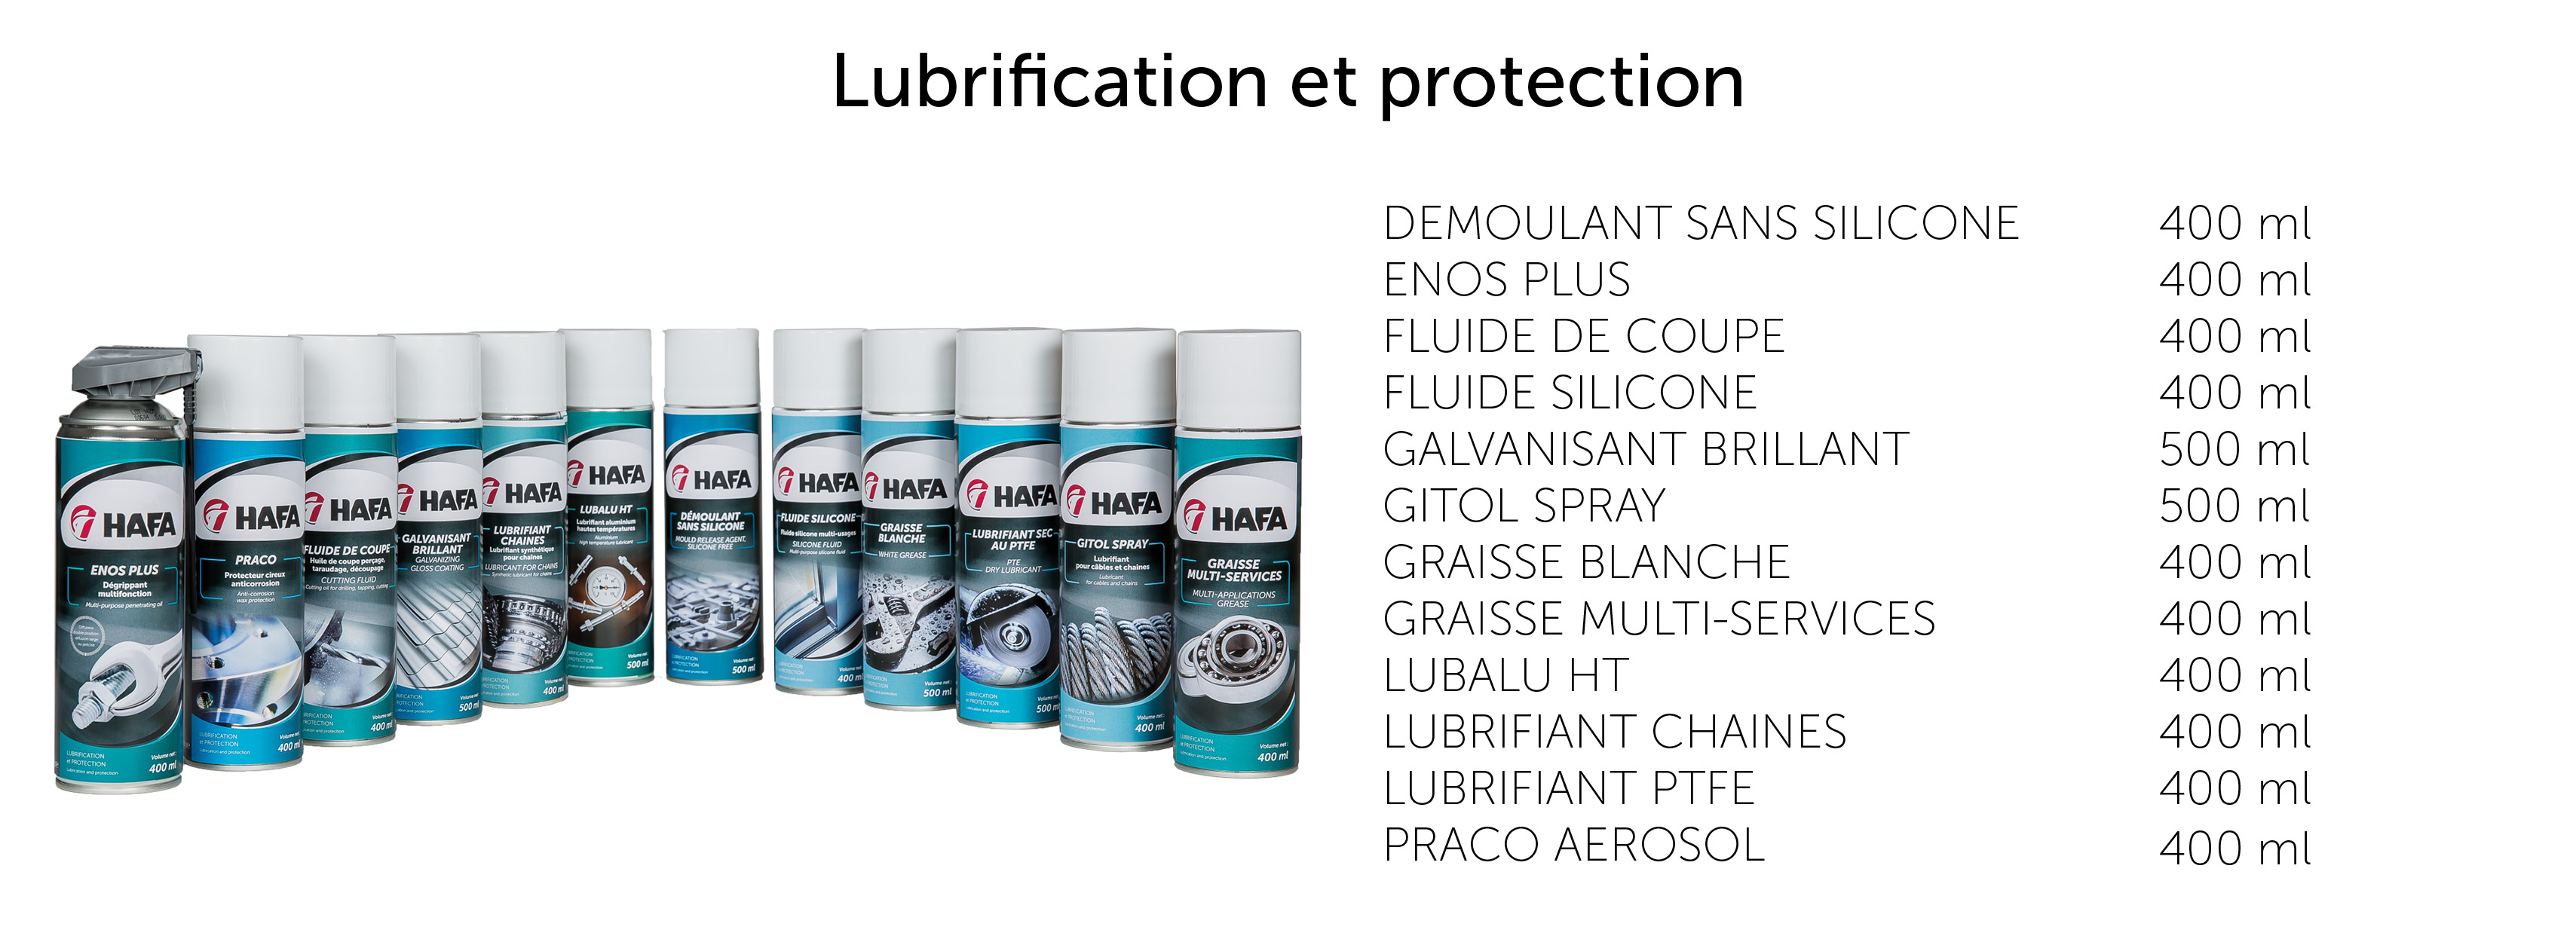 Les aérosols de la gamme Lubrification et protection